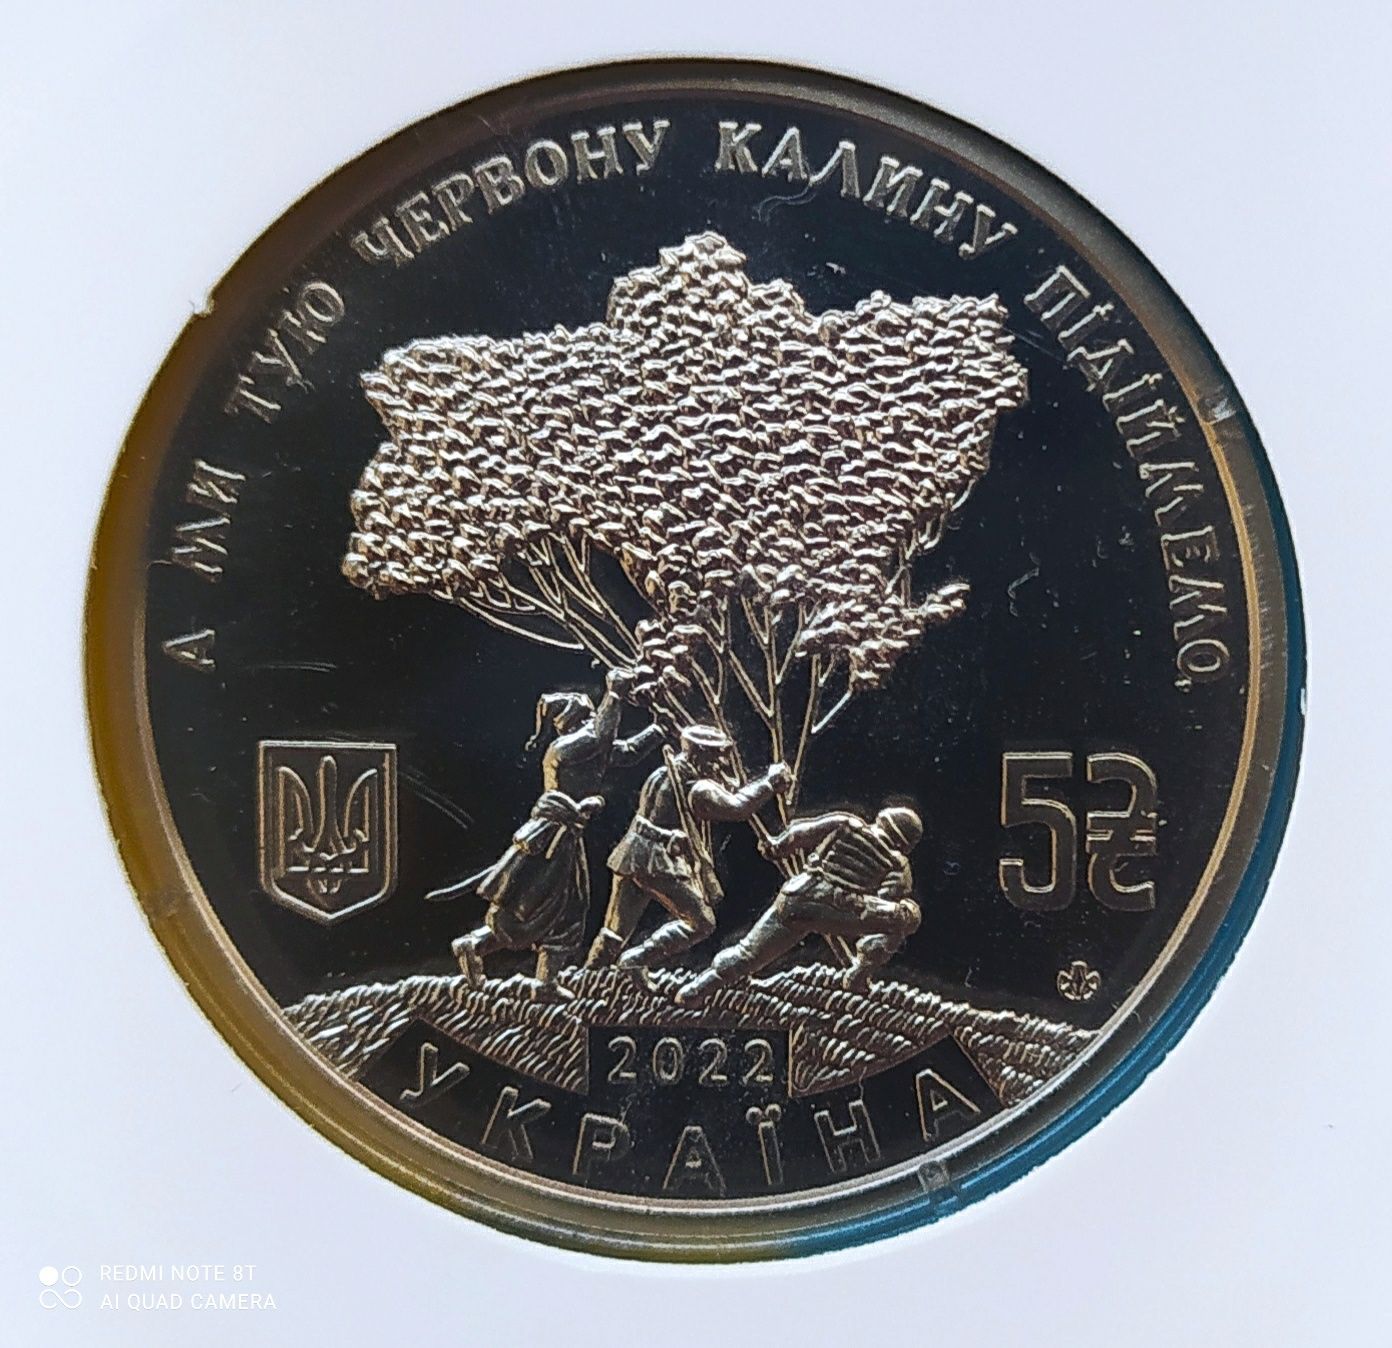 Монета України 5 грн "Ой у лузі червона калина"